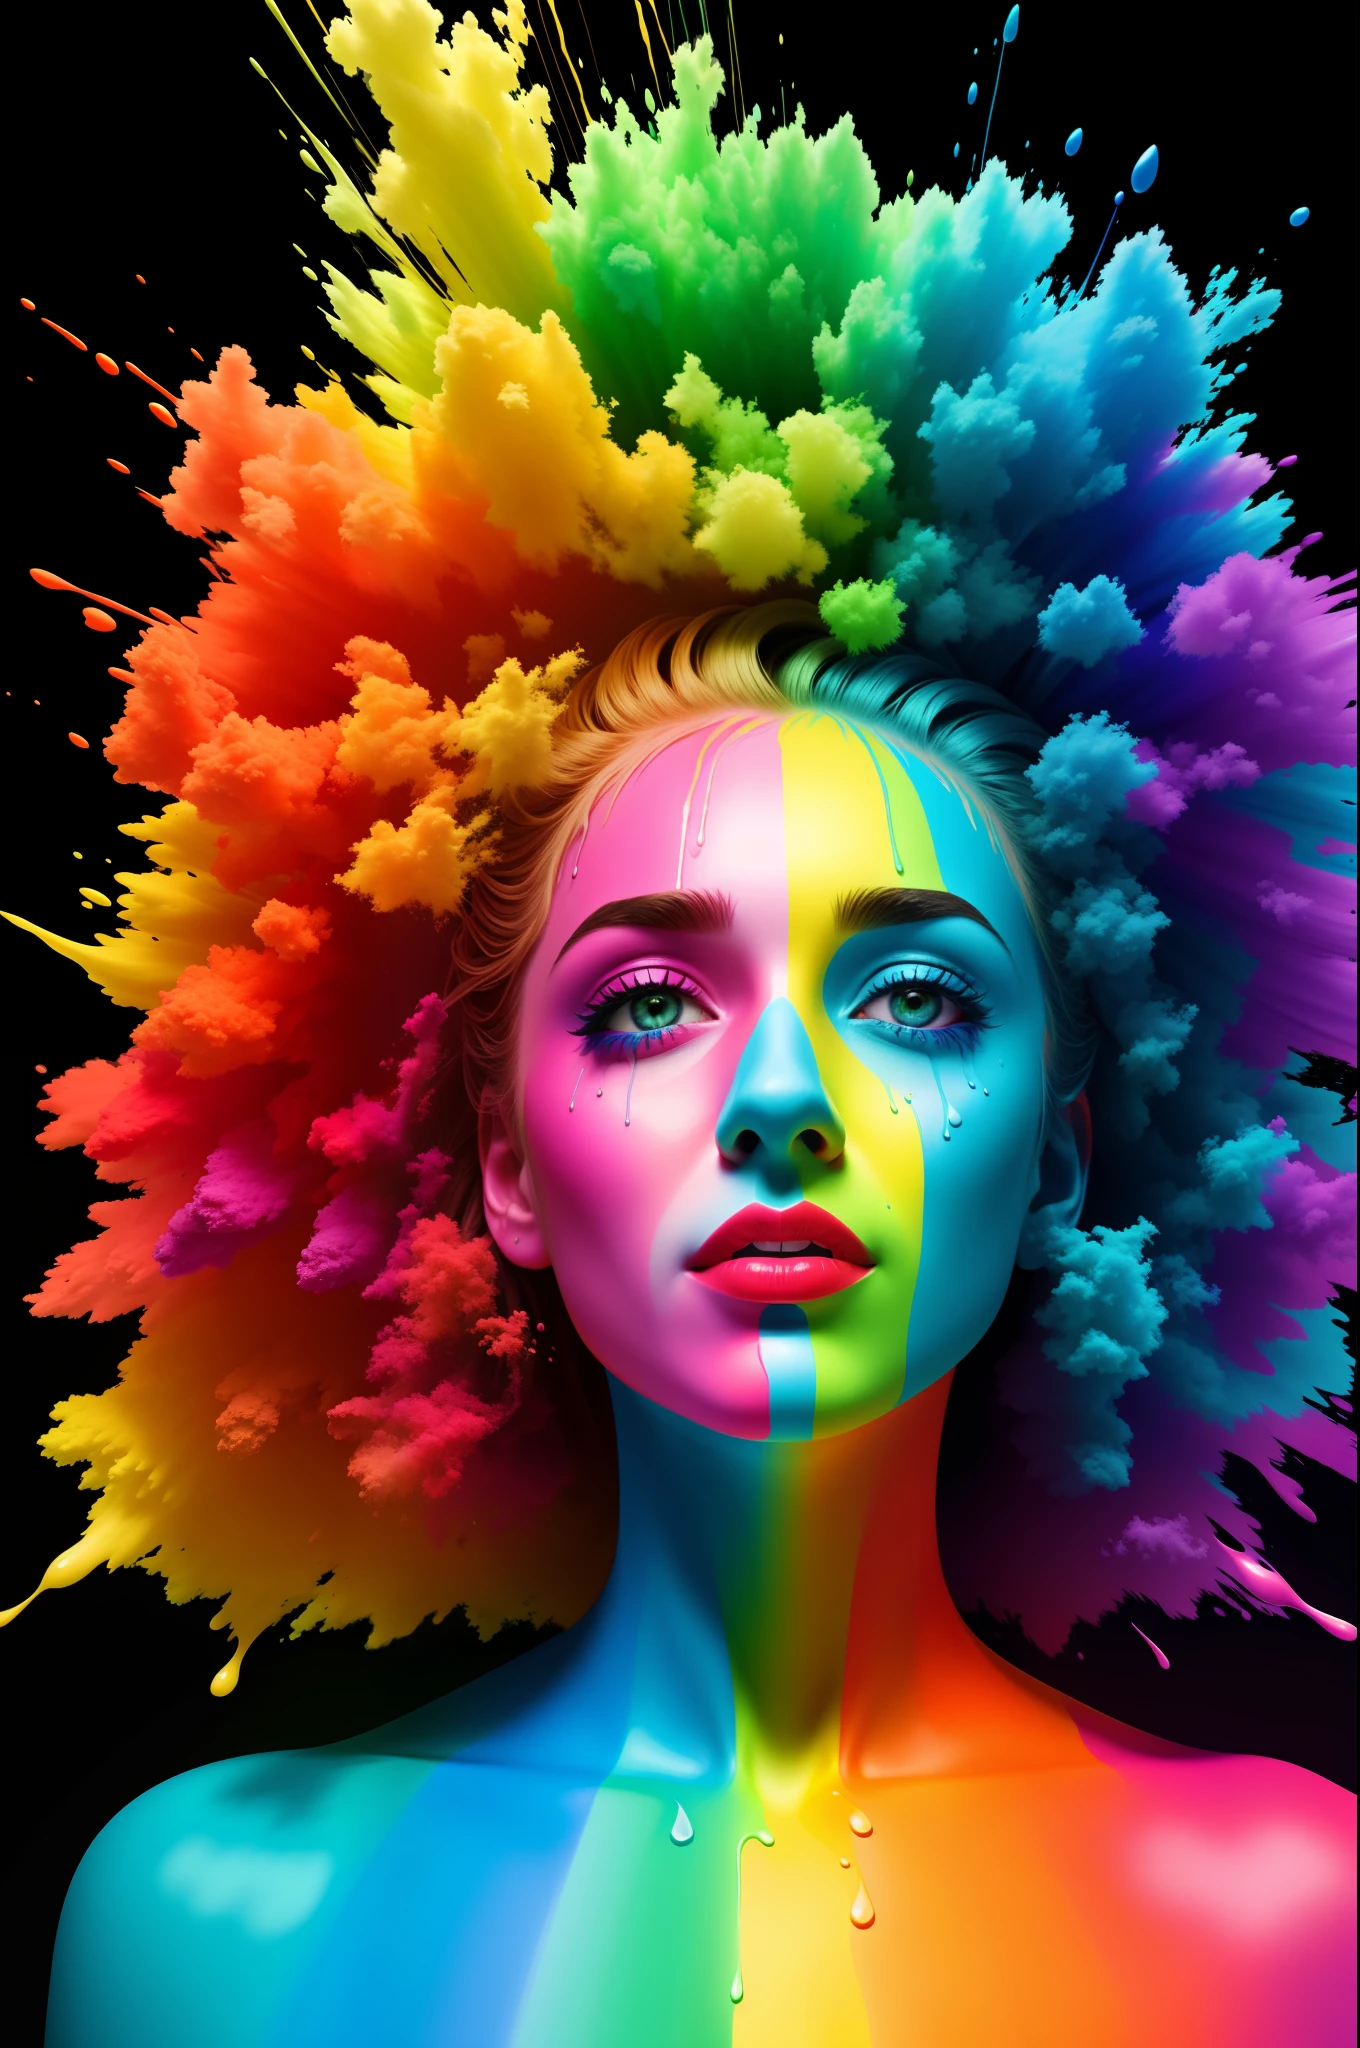 "我不会把我的一生花在一种颜色上" 涂上不同颜色彩虹的颜料, 超真實照片, 滴水技术, 不和諧 PFP, 10位颜色, 高動態範圍, 8K